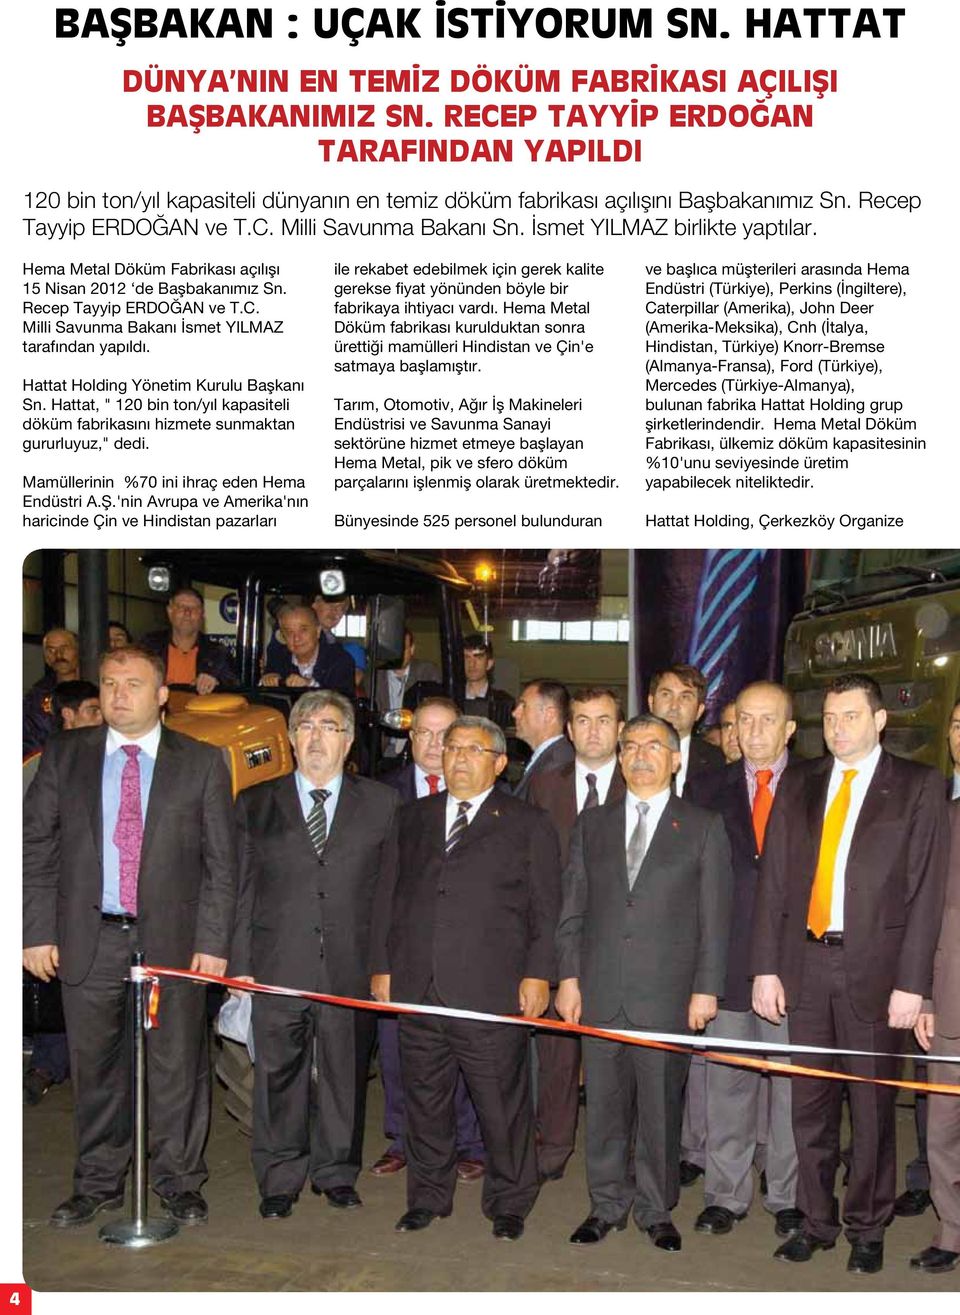 İsmet YILMAZ birlikte yaptılar. Hema Metal Döküm Fabrikası açılışı 15 Nisan 2012 de Başbakanımız Sn. Recep Tayyip ERDOĞAN ve T.C. Milli Savunma Bakanı İsmet YILMAZ tarafından yapıldı.